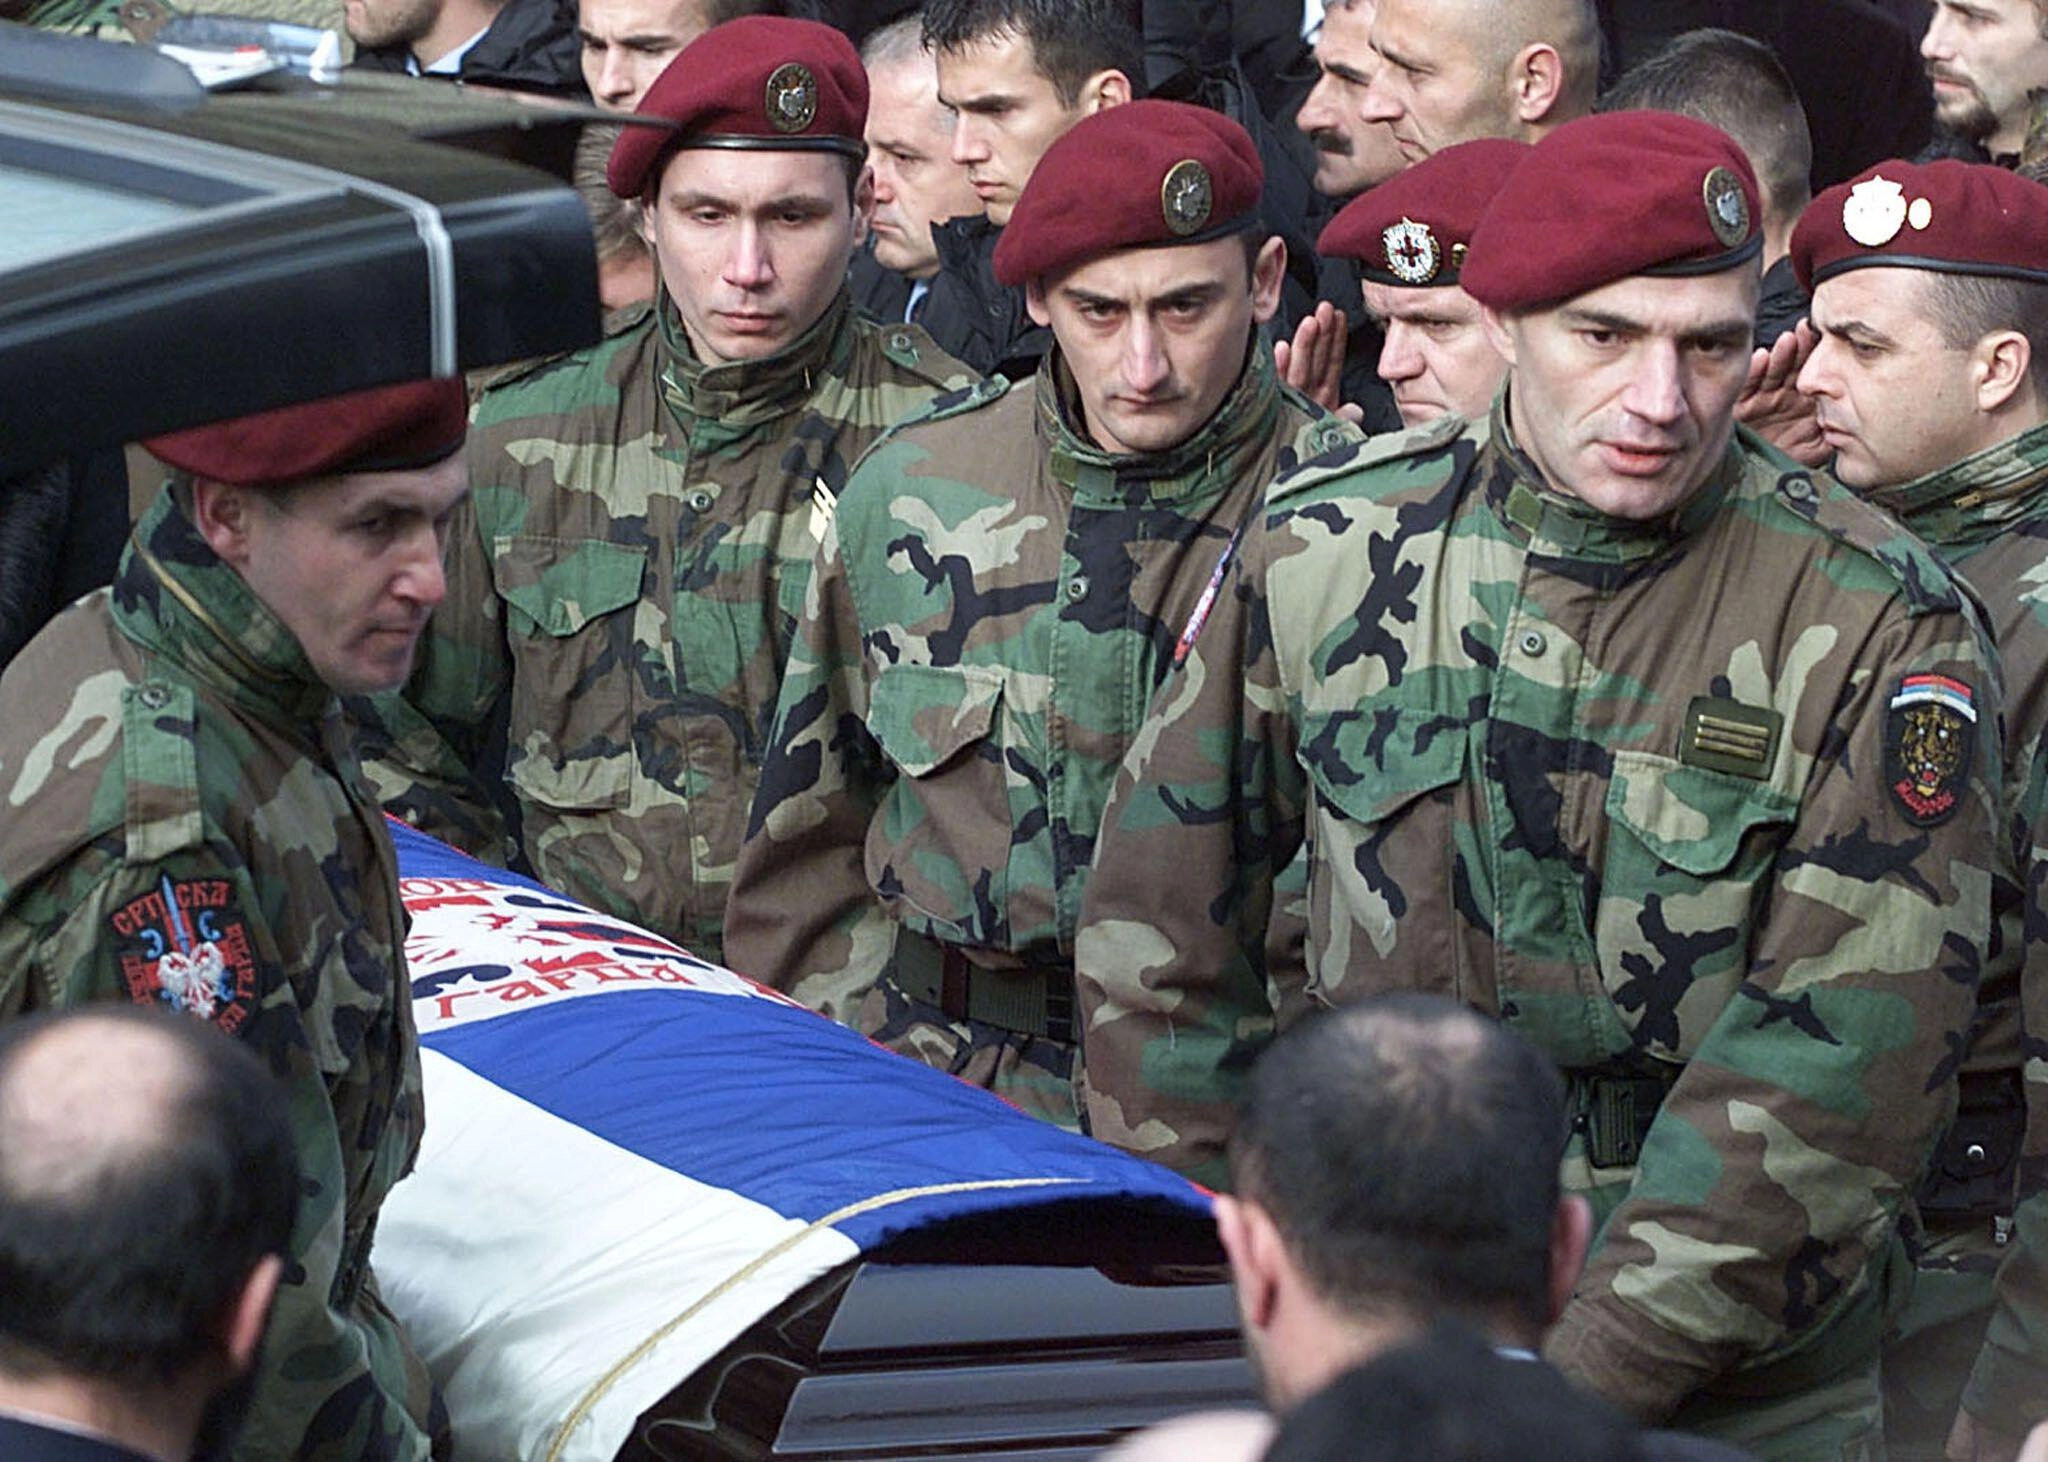 Members of Arkan's Tigers carry Arkan's coffin at his funeral in Belgrade, Serbia, on Jan. 20, 2000.